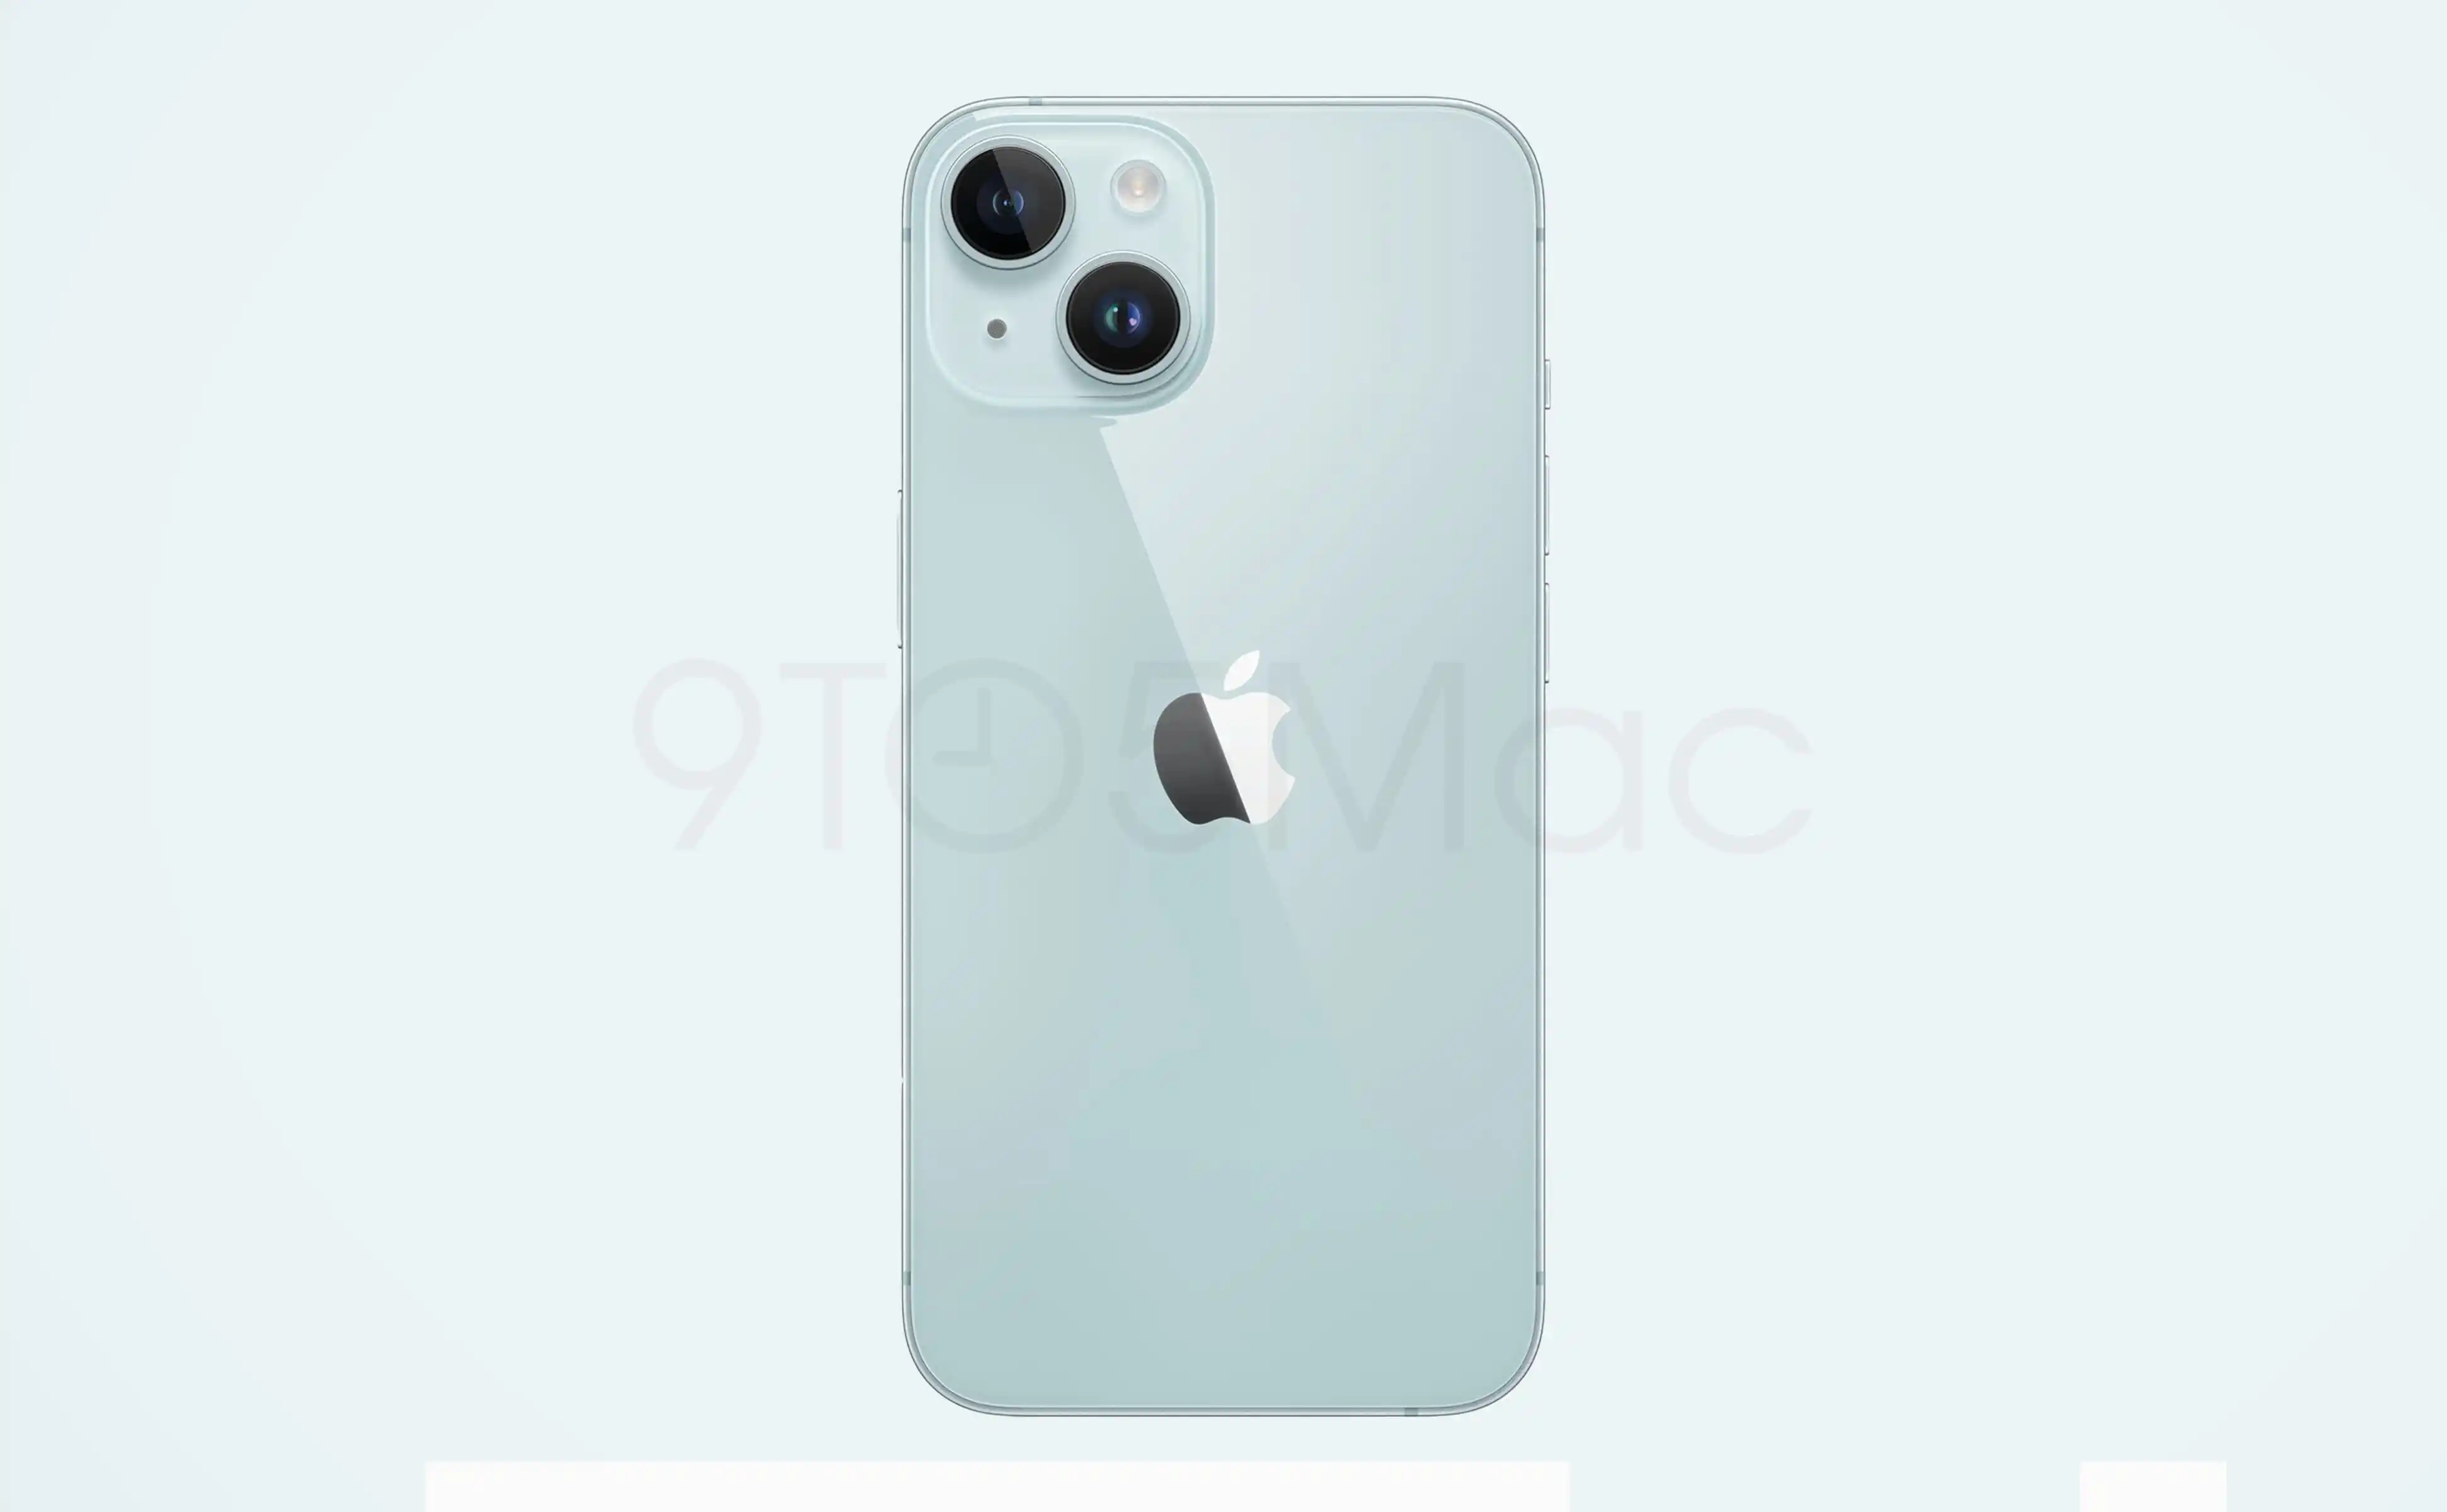 苹果 iPhone 15 机型渲染图曝光，包括全新绿色